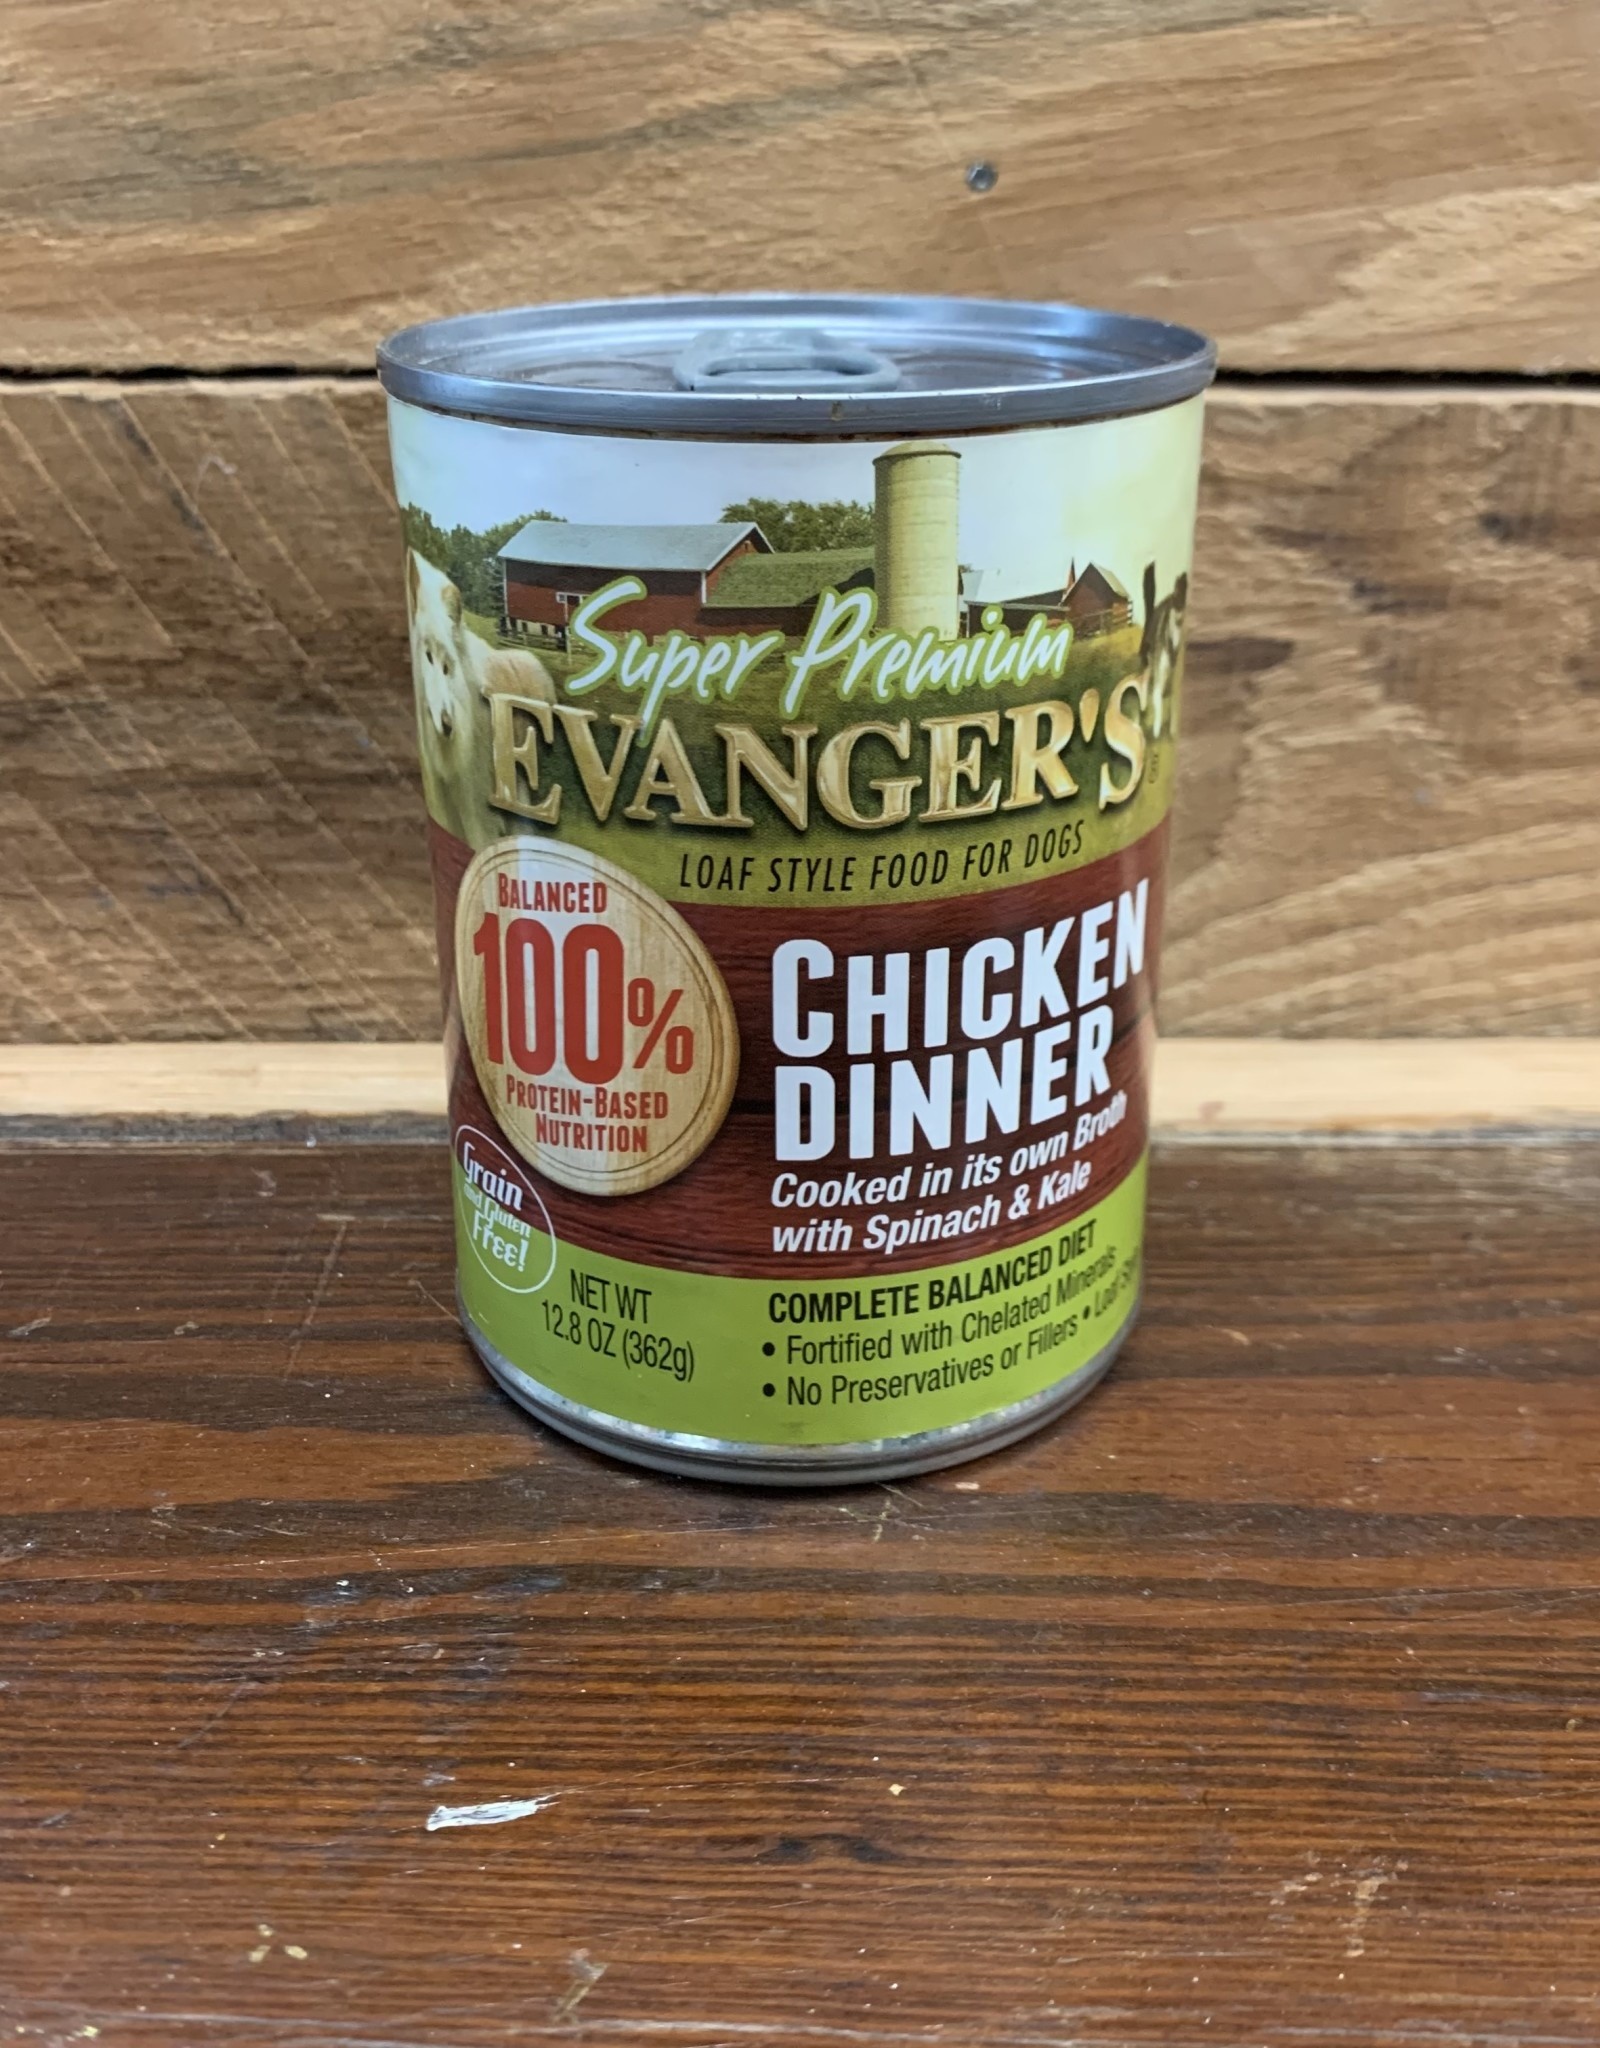 Evangers Super Premium Chicken Dinner - dog can